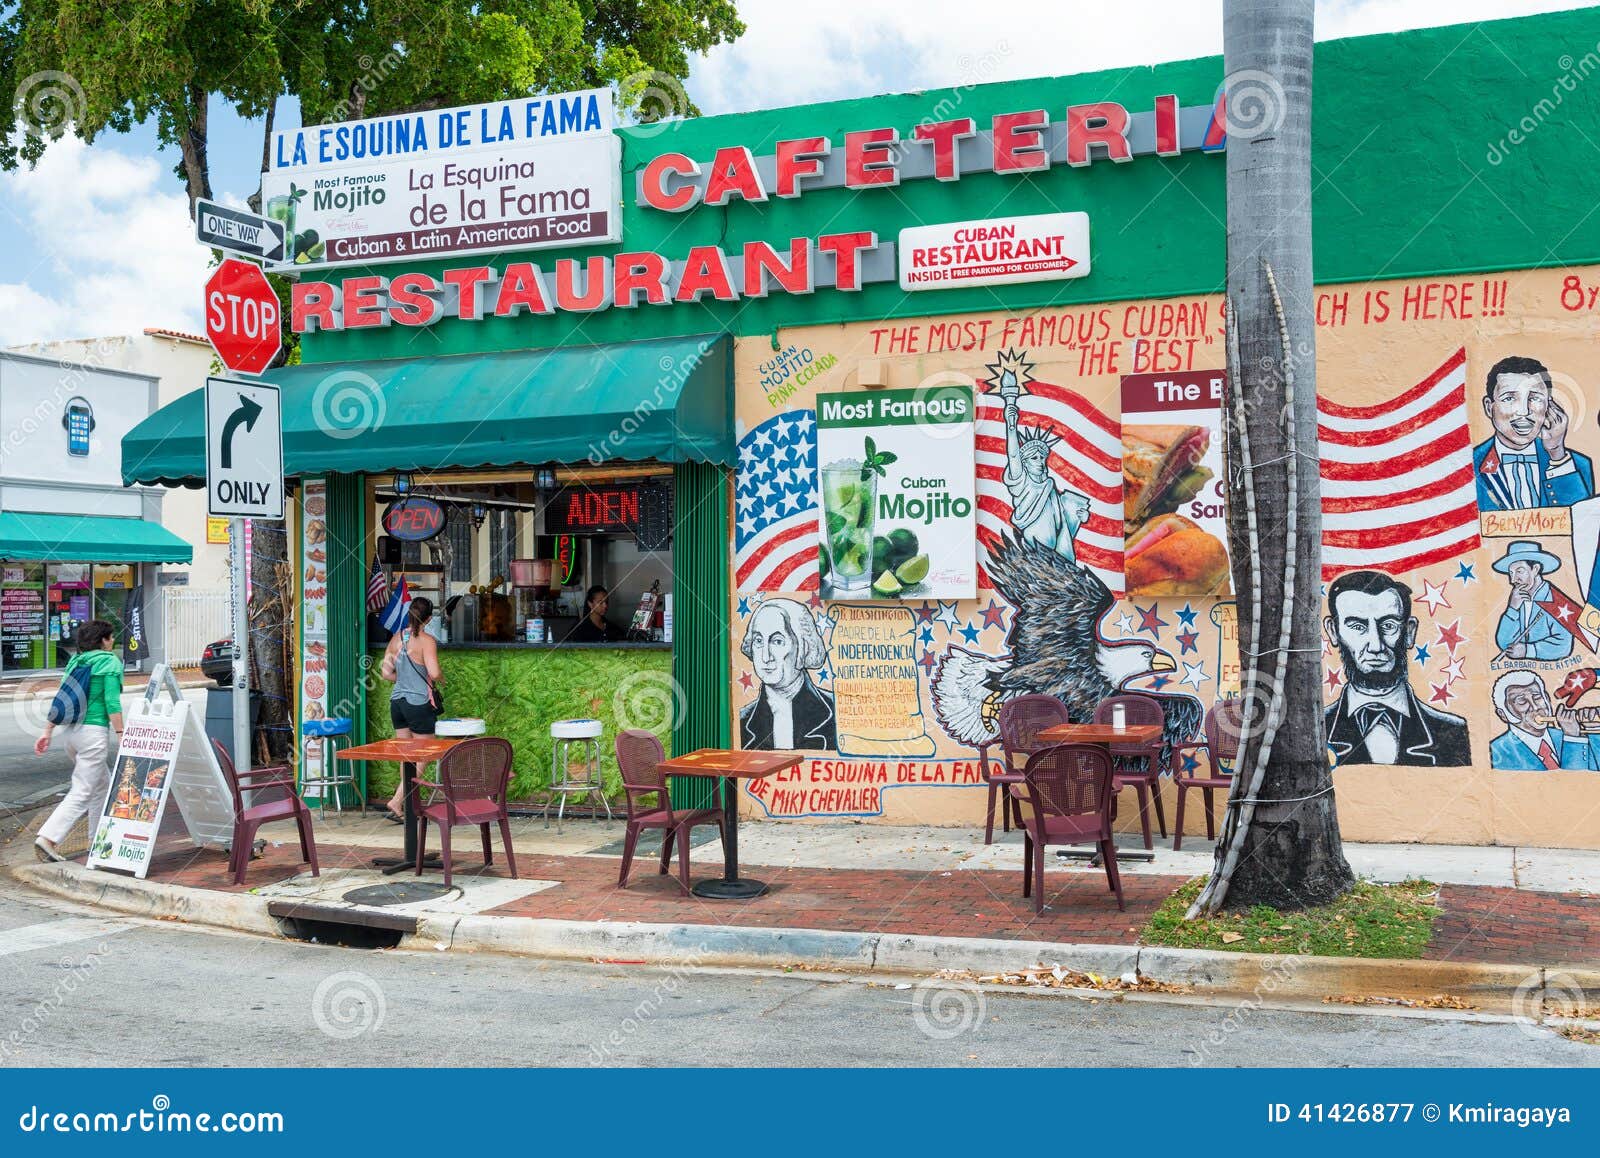 Cuban restaurant business plan Business Plan